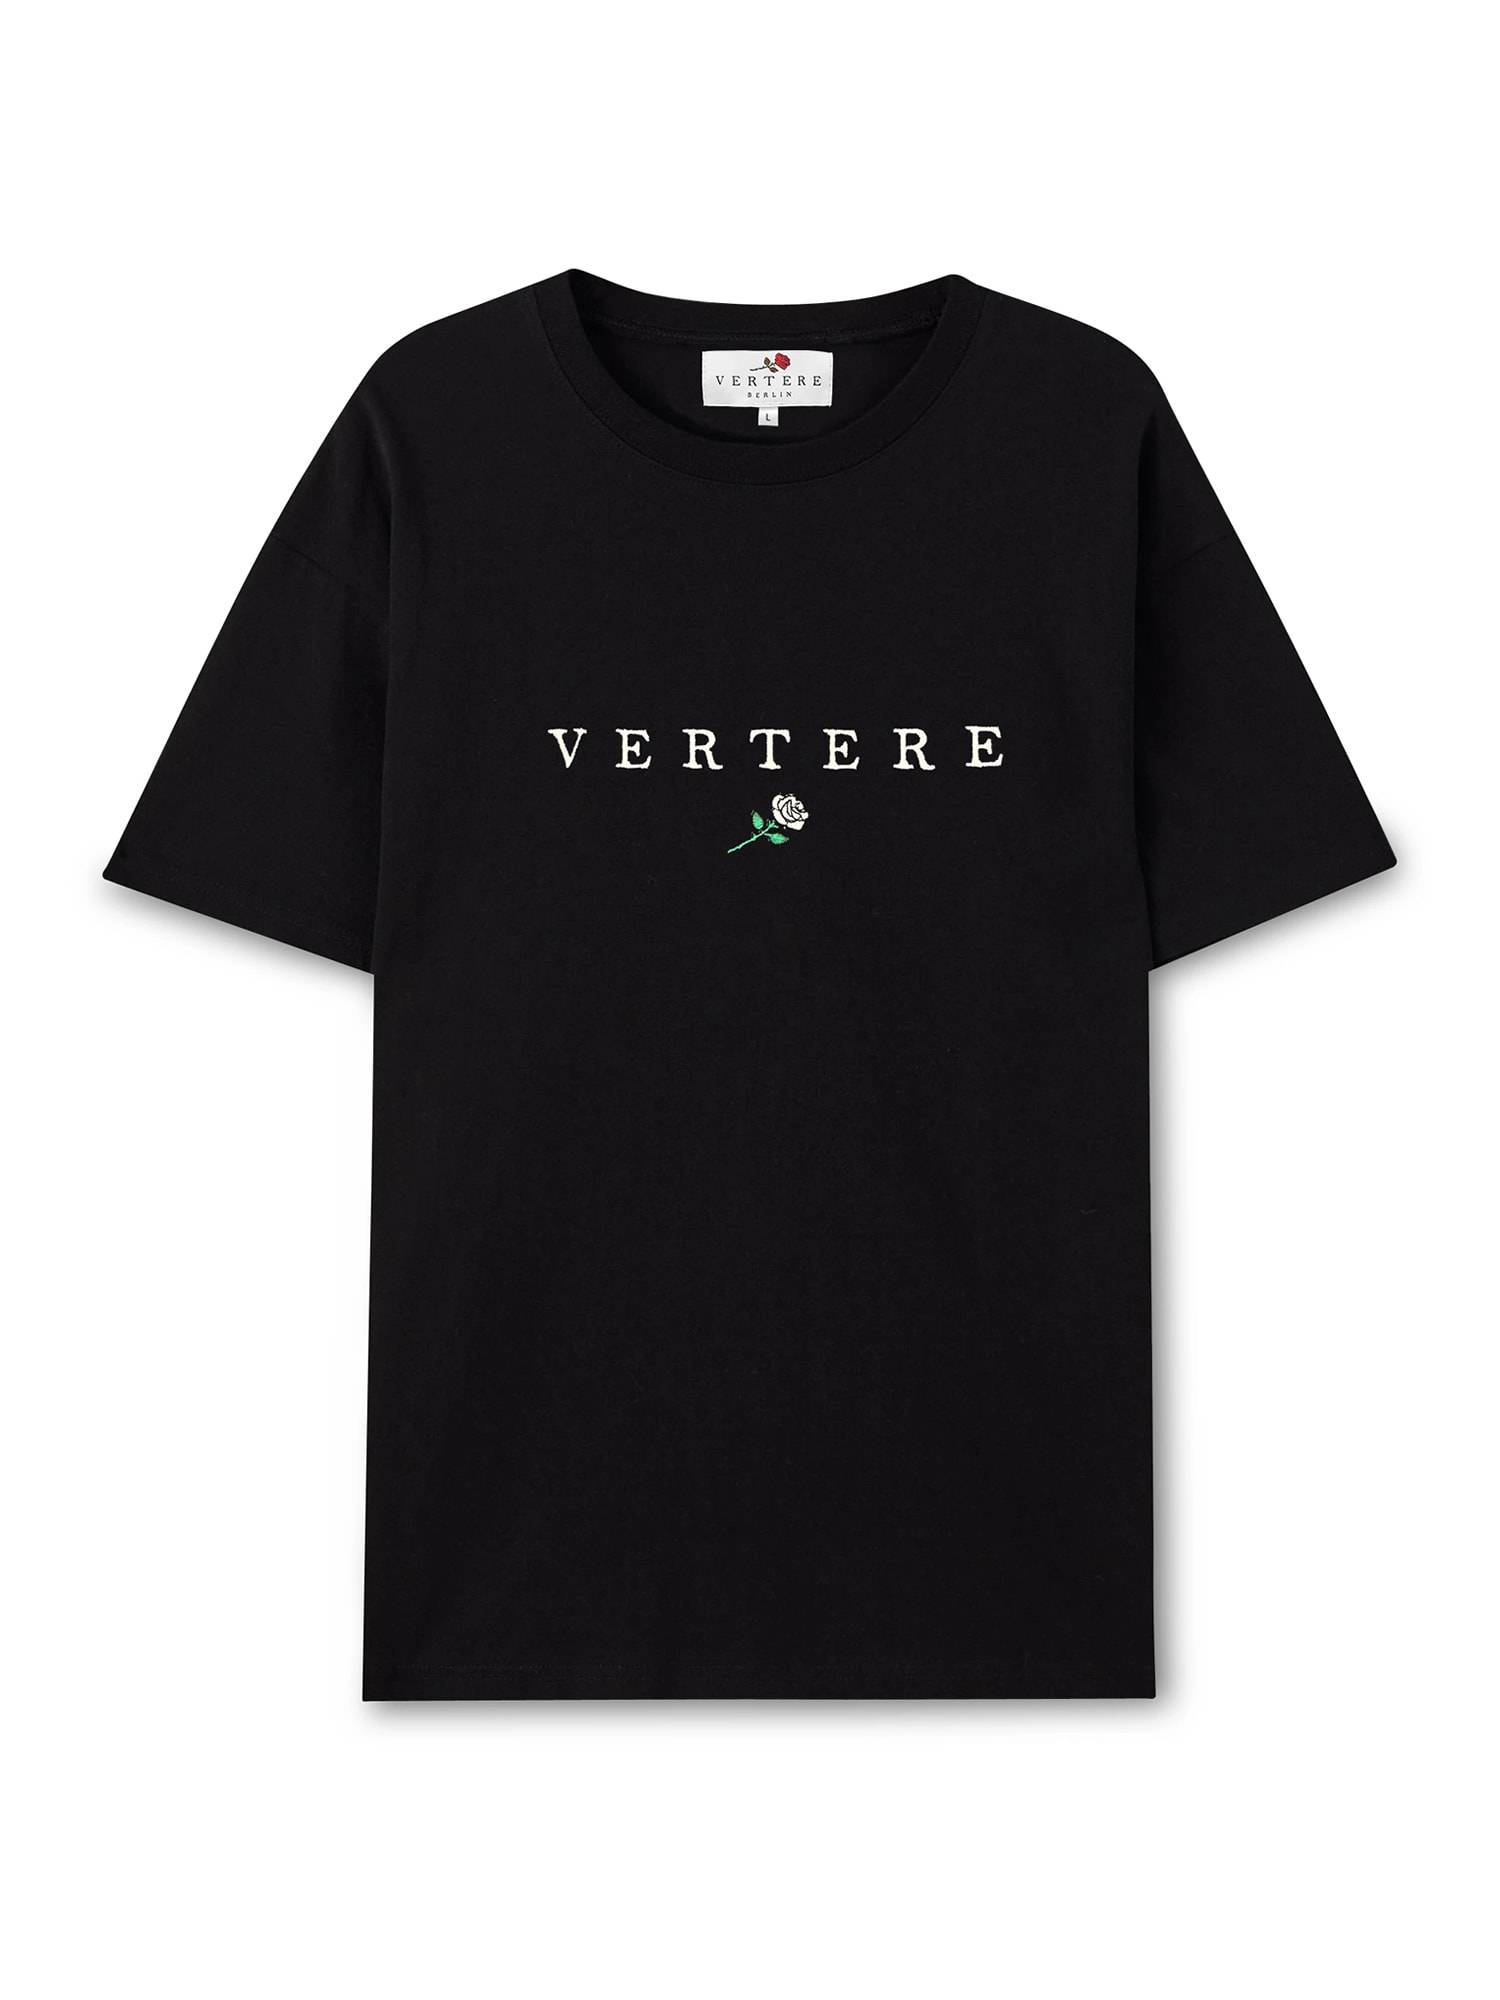 Vertere Berlin Marškinėliai žalia / rožių spalva / juoda / balta